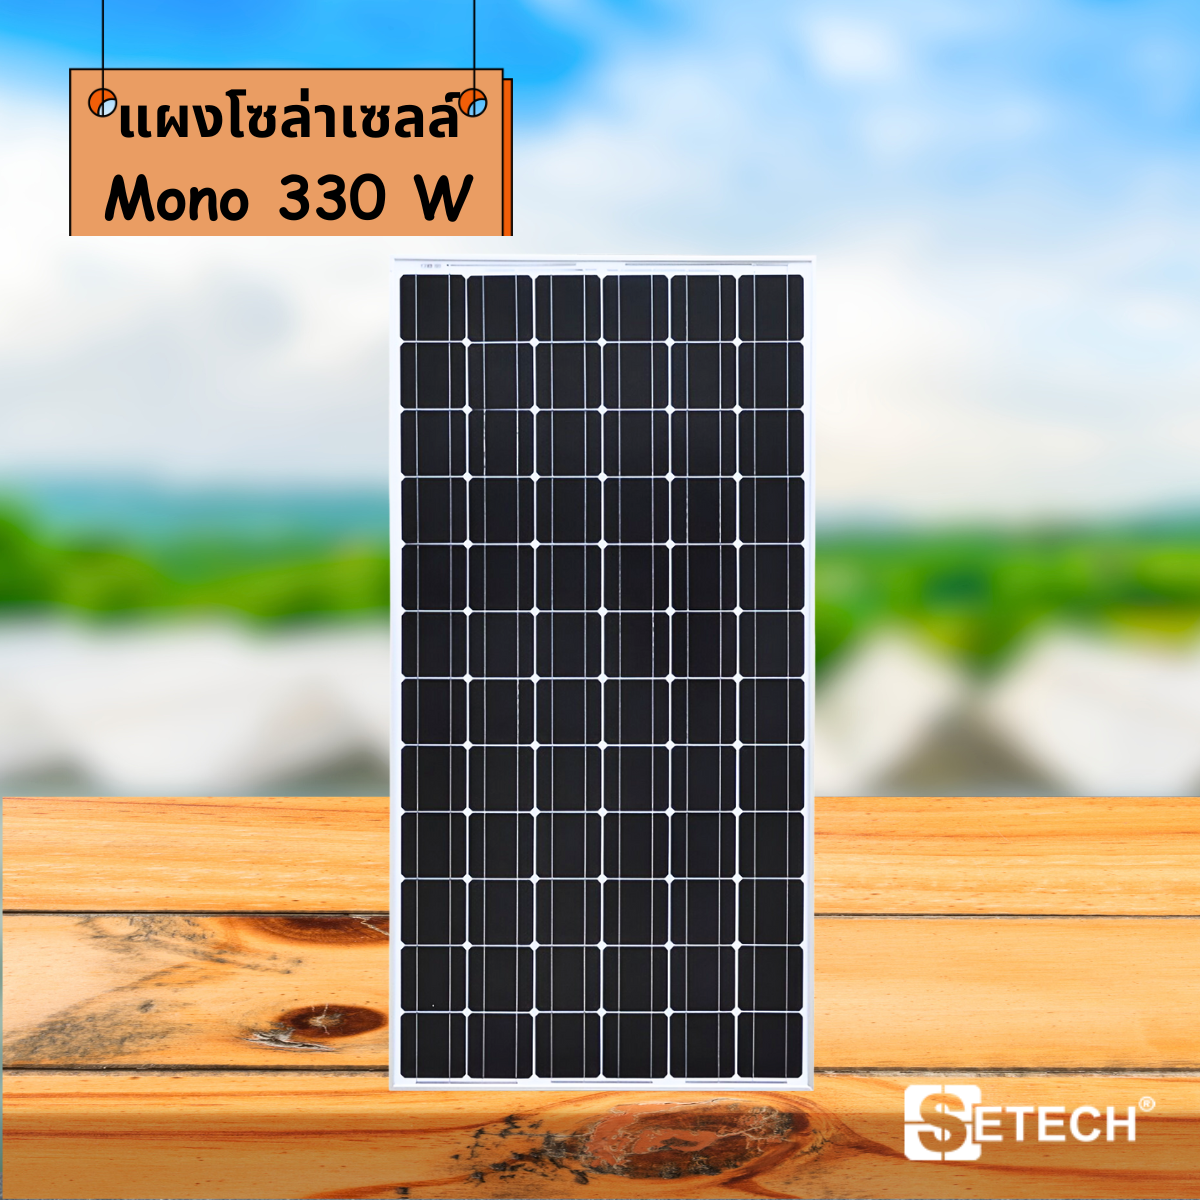 Solar panels Model Mono 330 W SETECH-SC-03 SC-03